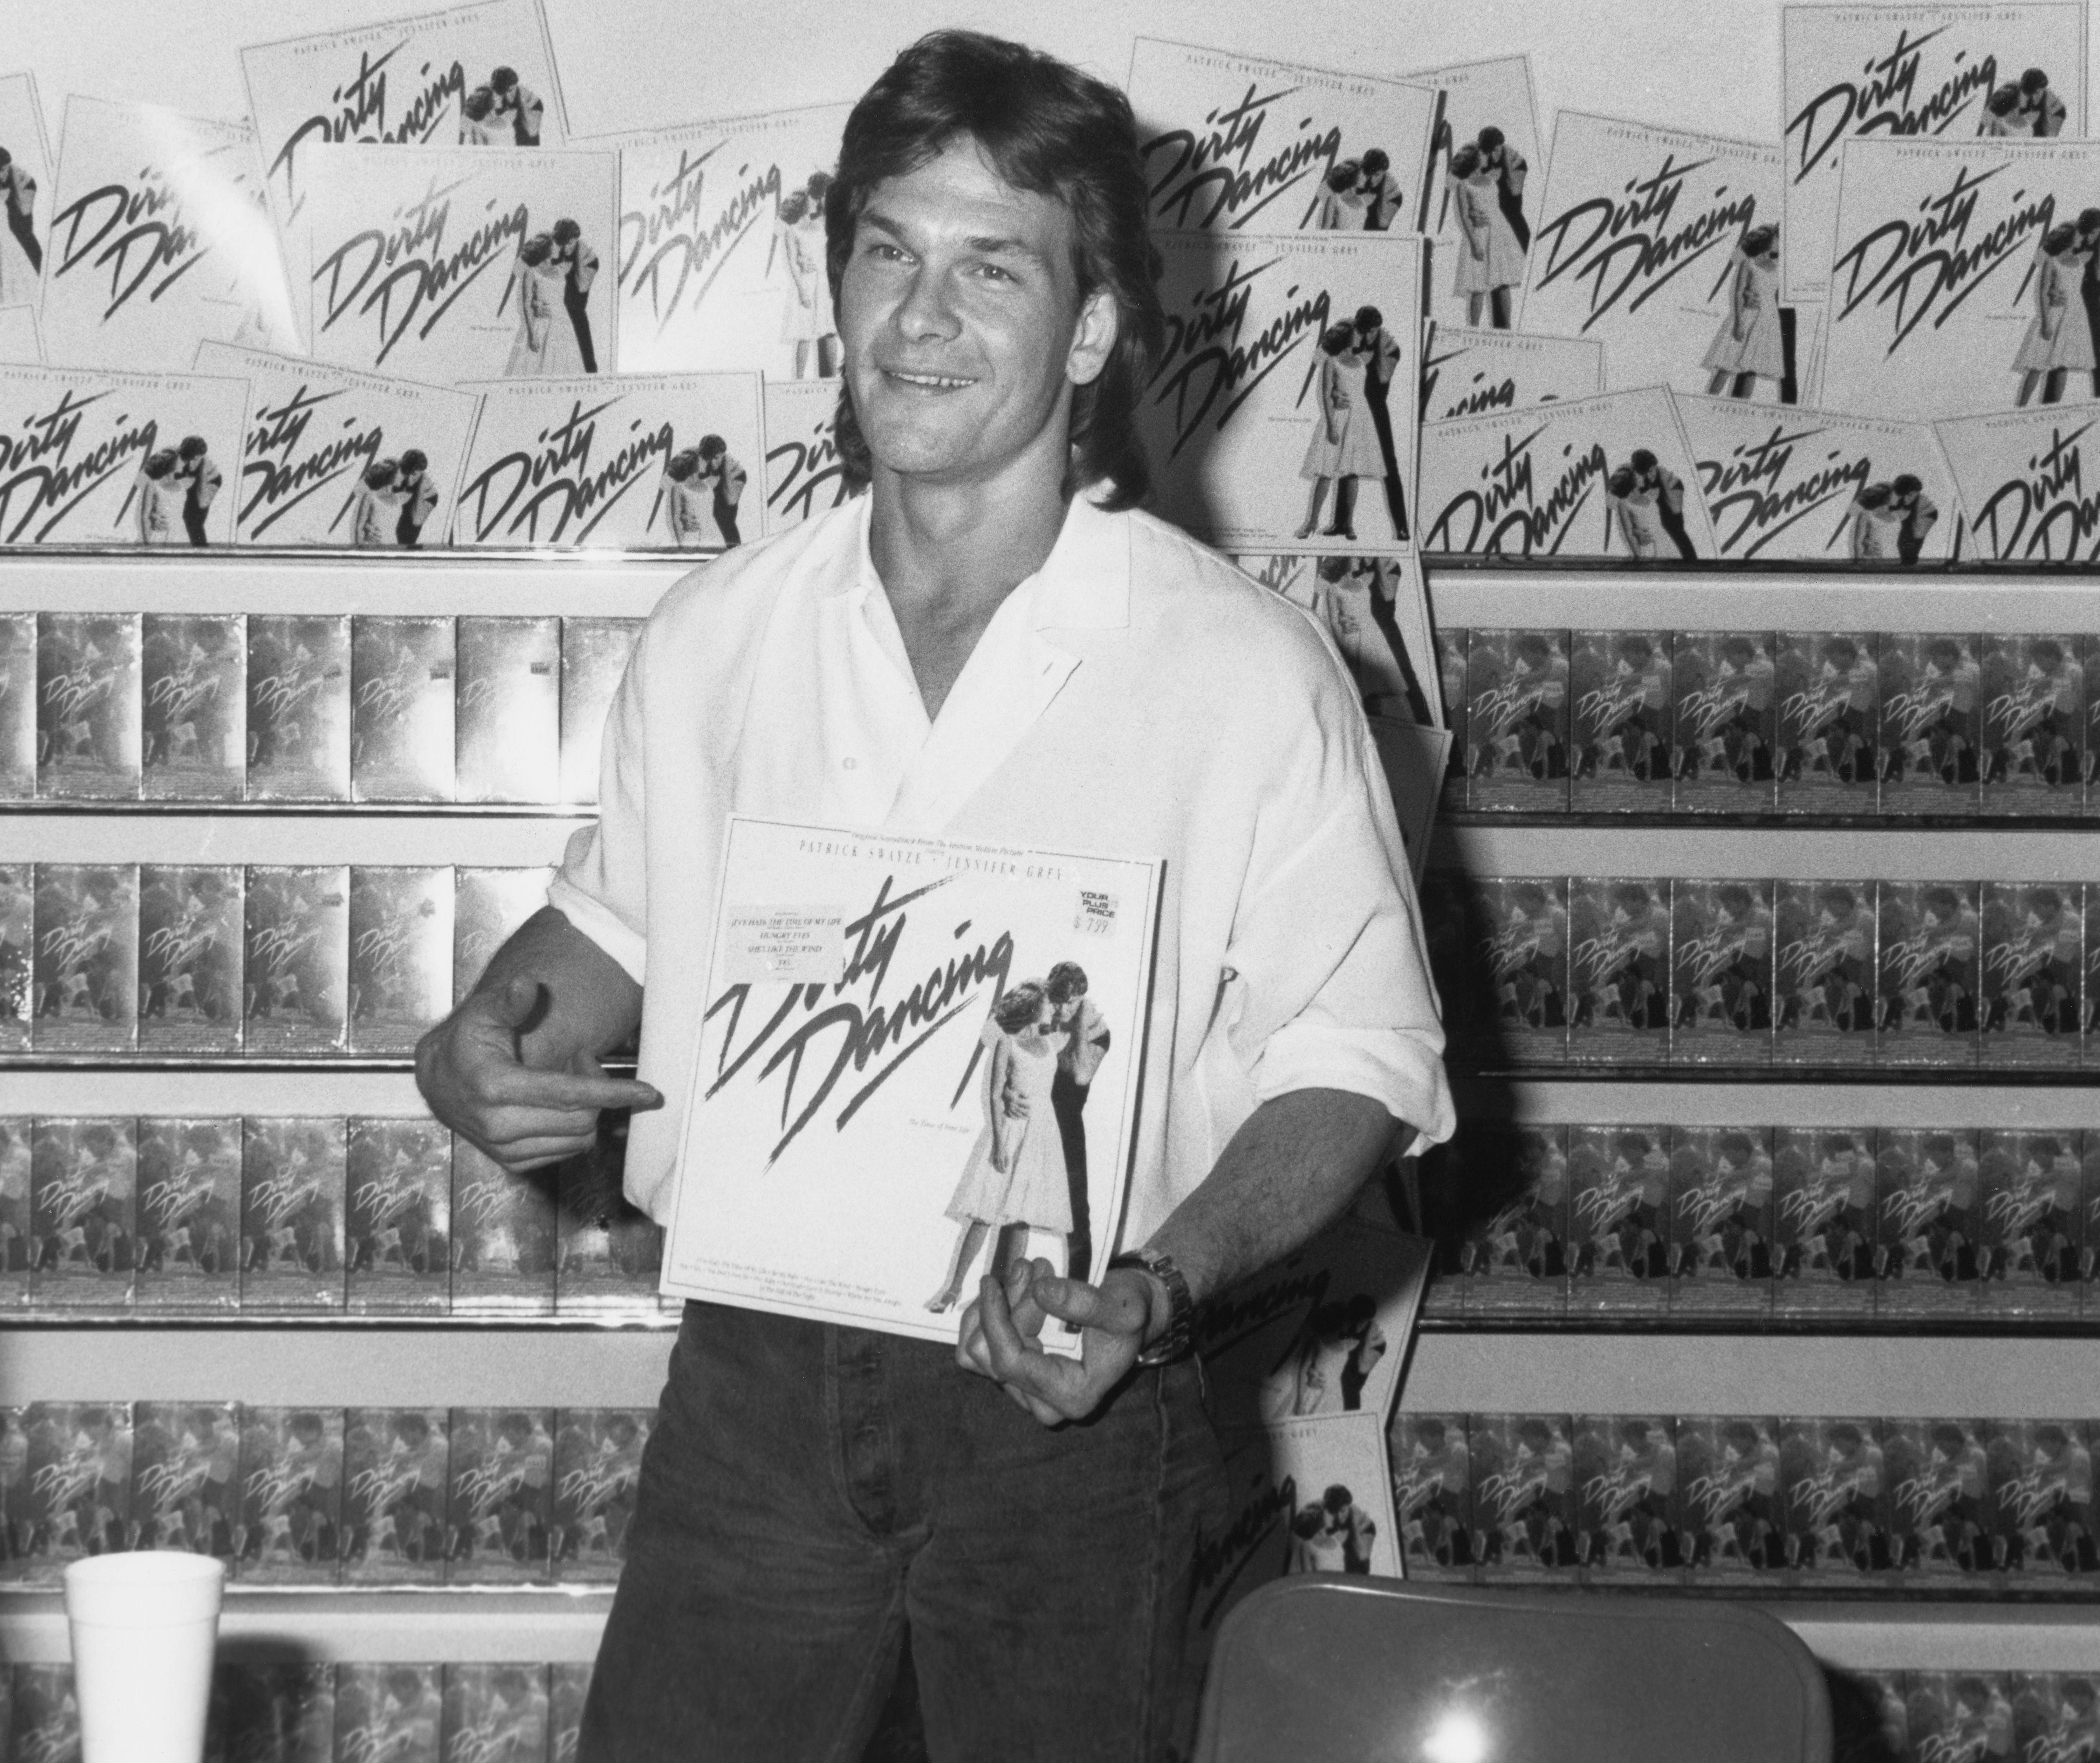 Patrick Swayze assiste à un événement promotionnel dans un magasin où il a signé des copies de la bande originale de 'Dirty Dancing', dans un magasin de disques à Los Angeles, Californie, 1988 | Source : Getty Images